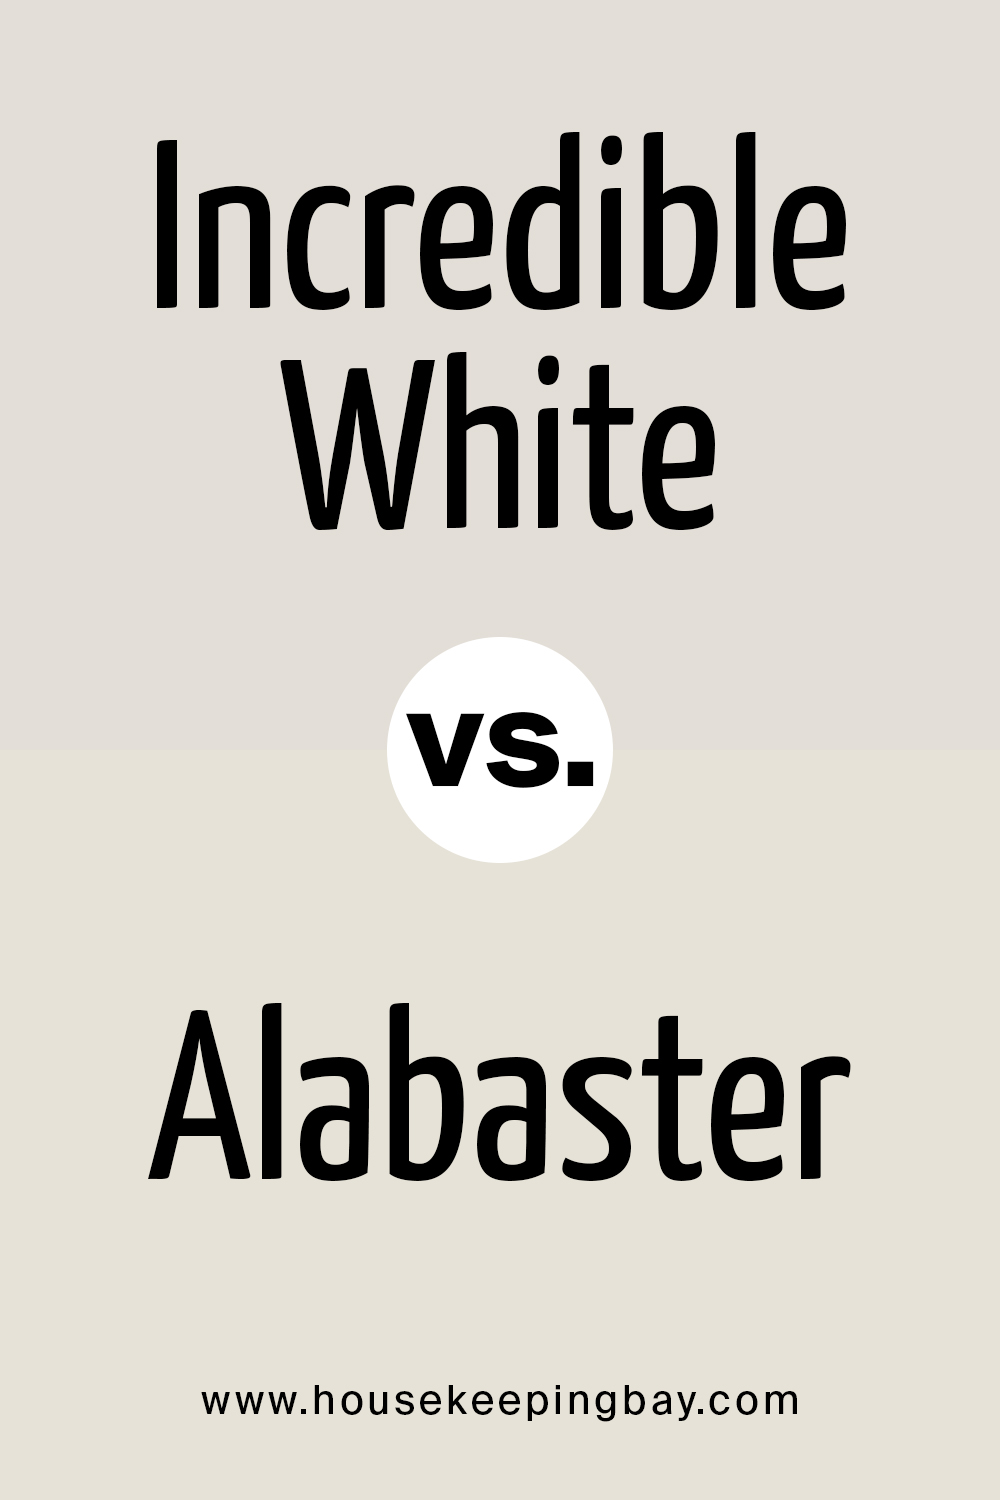 Incredible White vs Alabaster